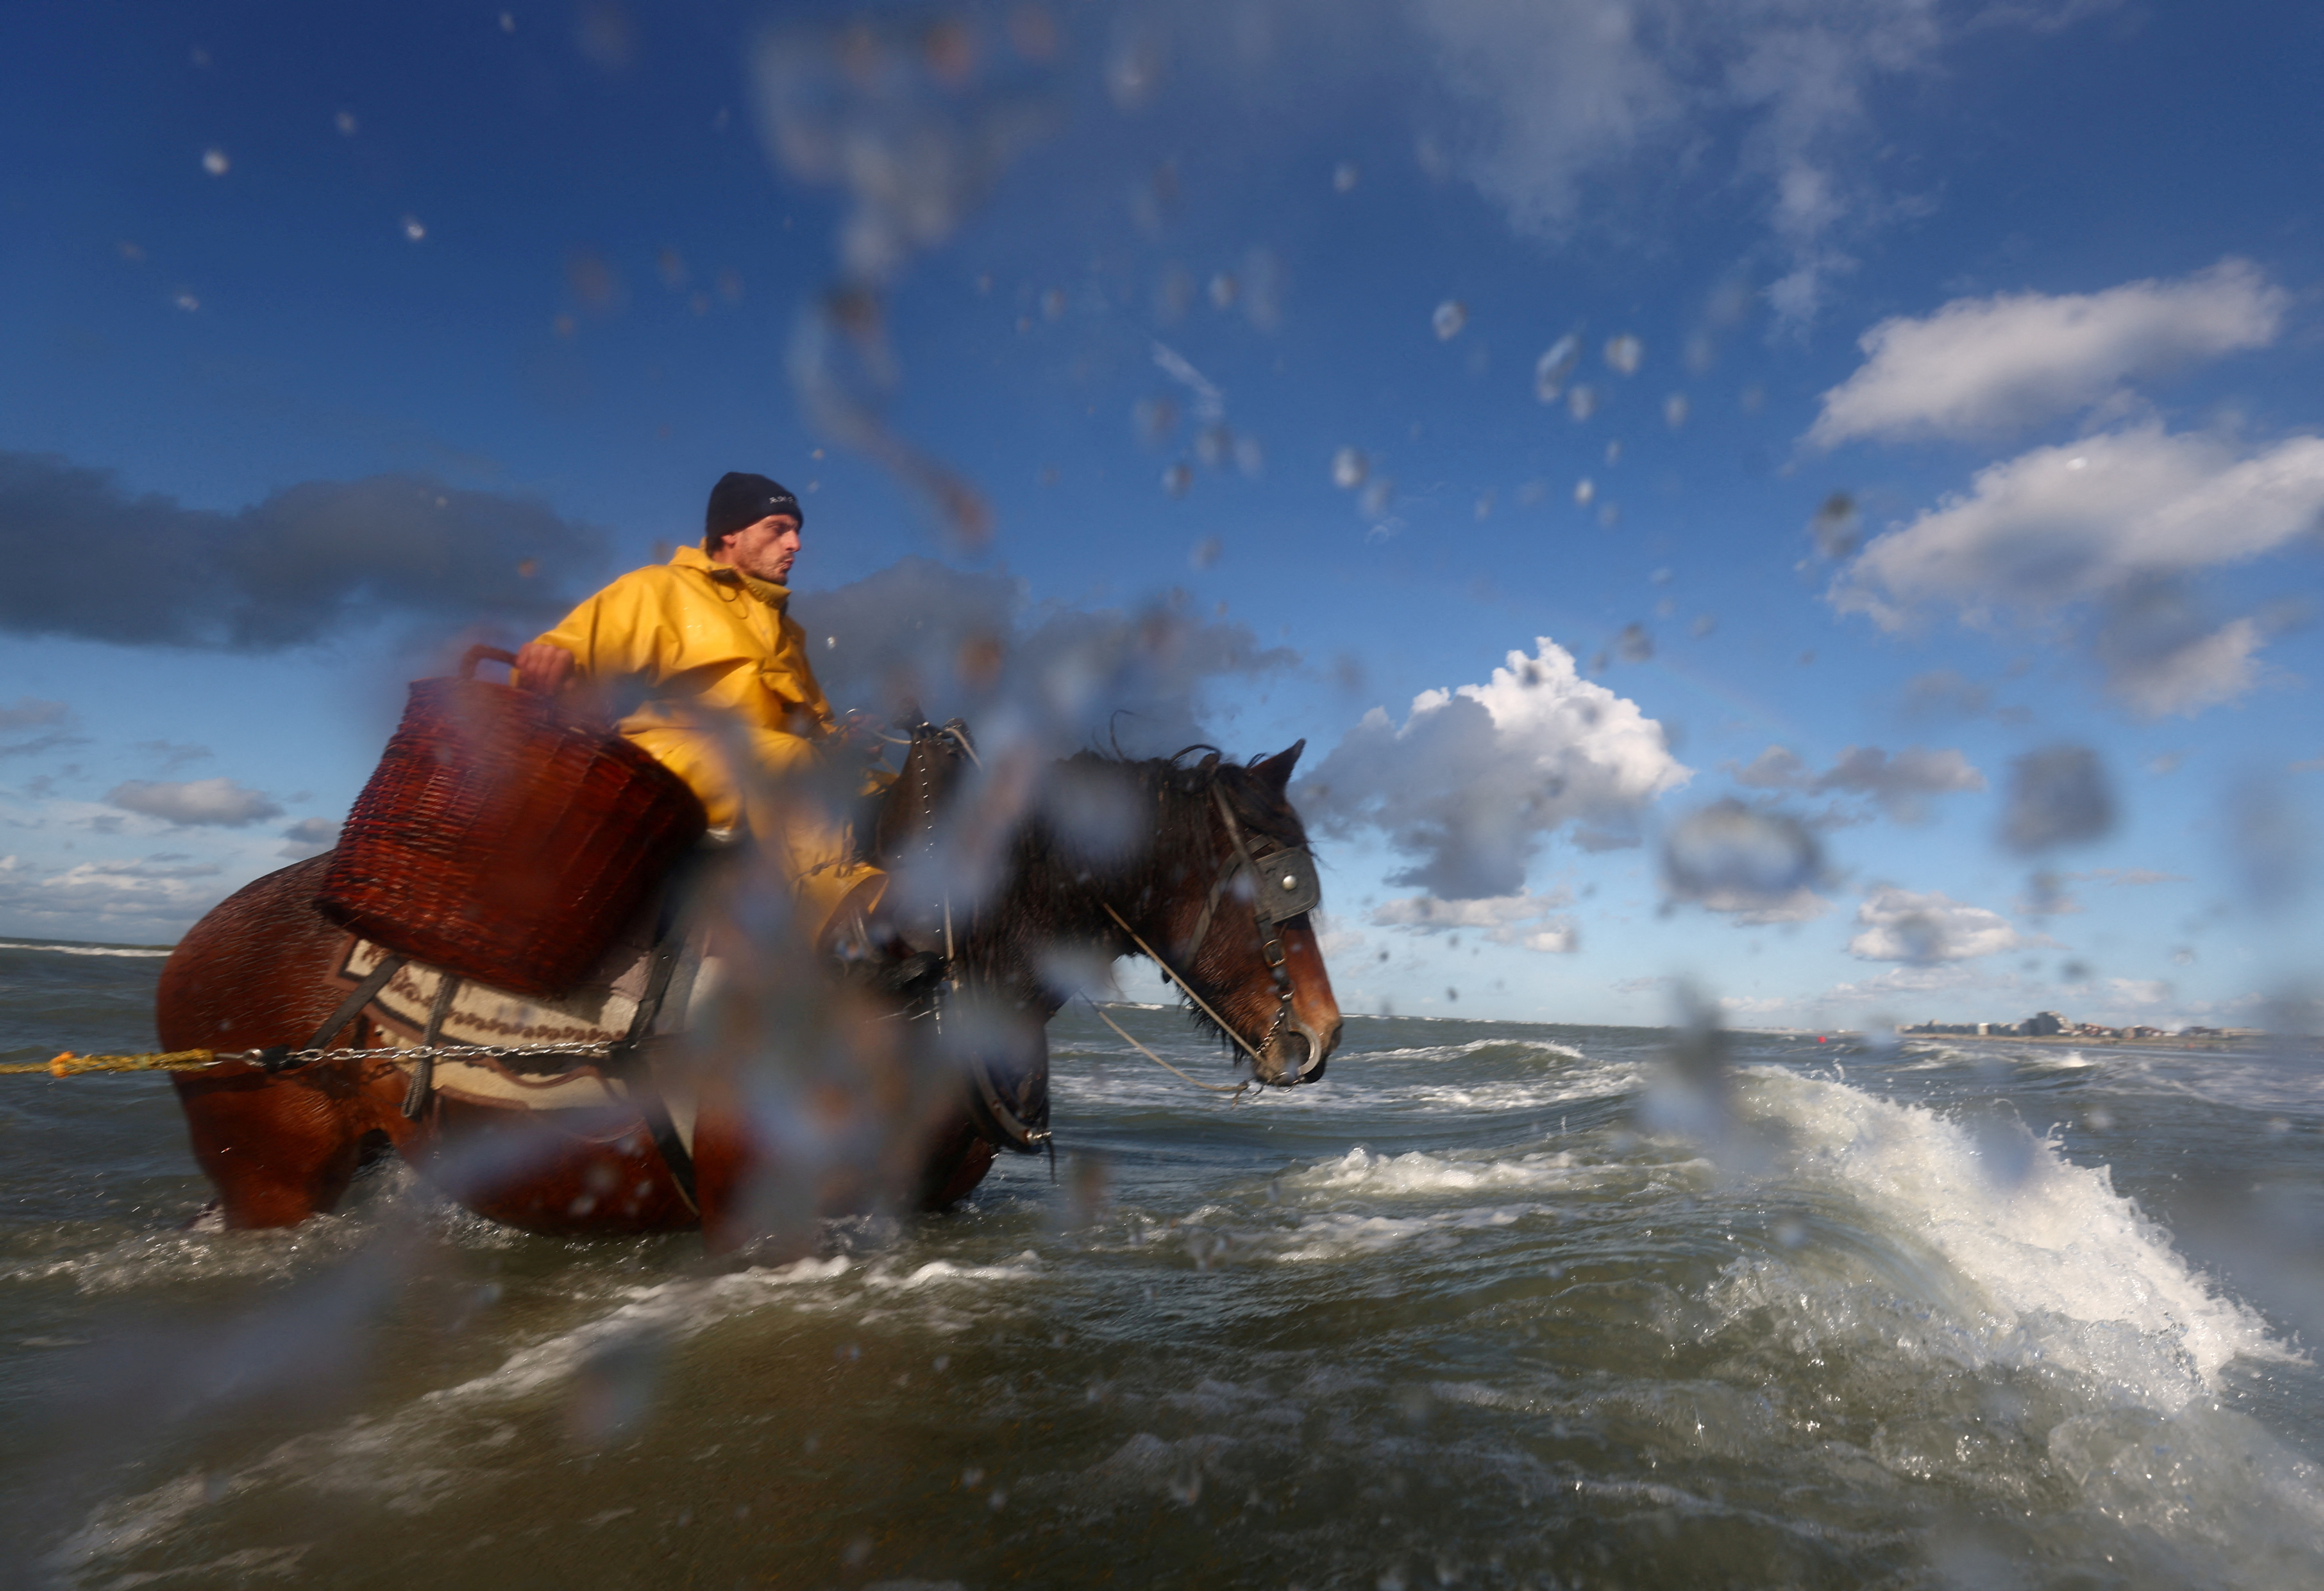 Shrimp fishing on horseback in the sea, in the Belgian coastal town of Oostduinkerke